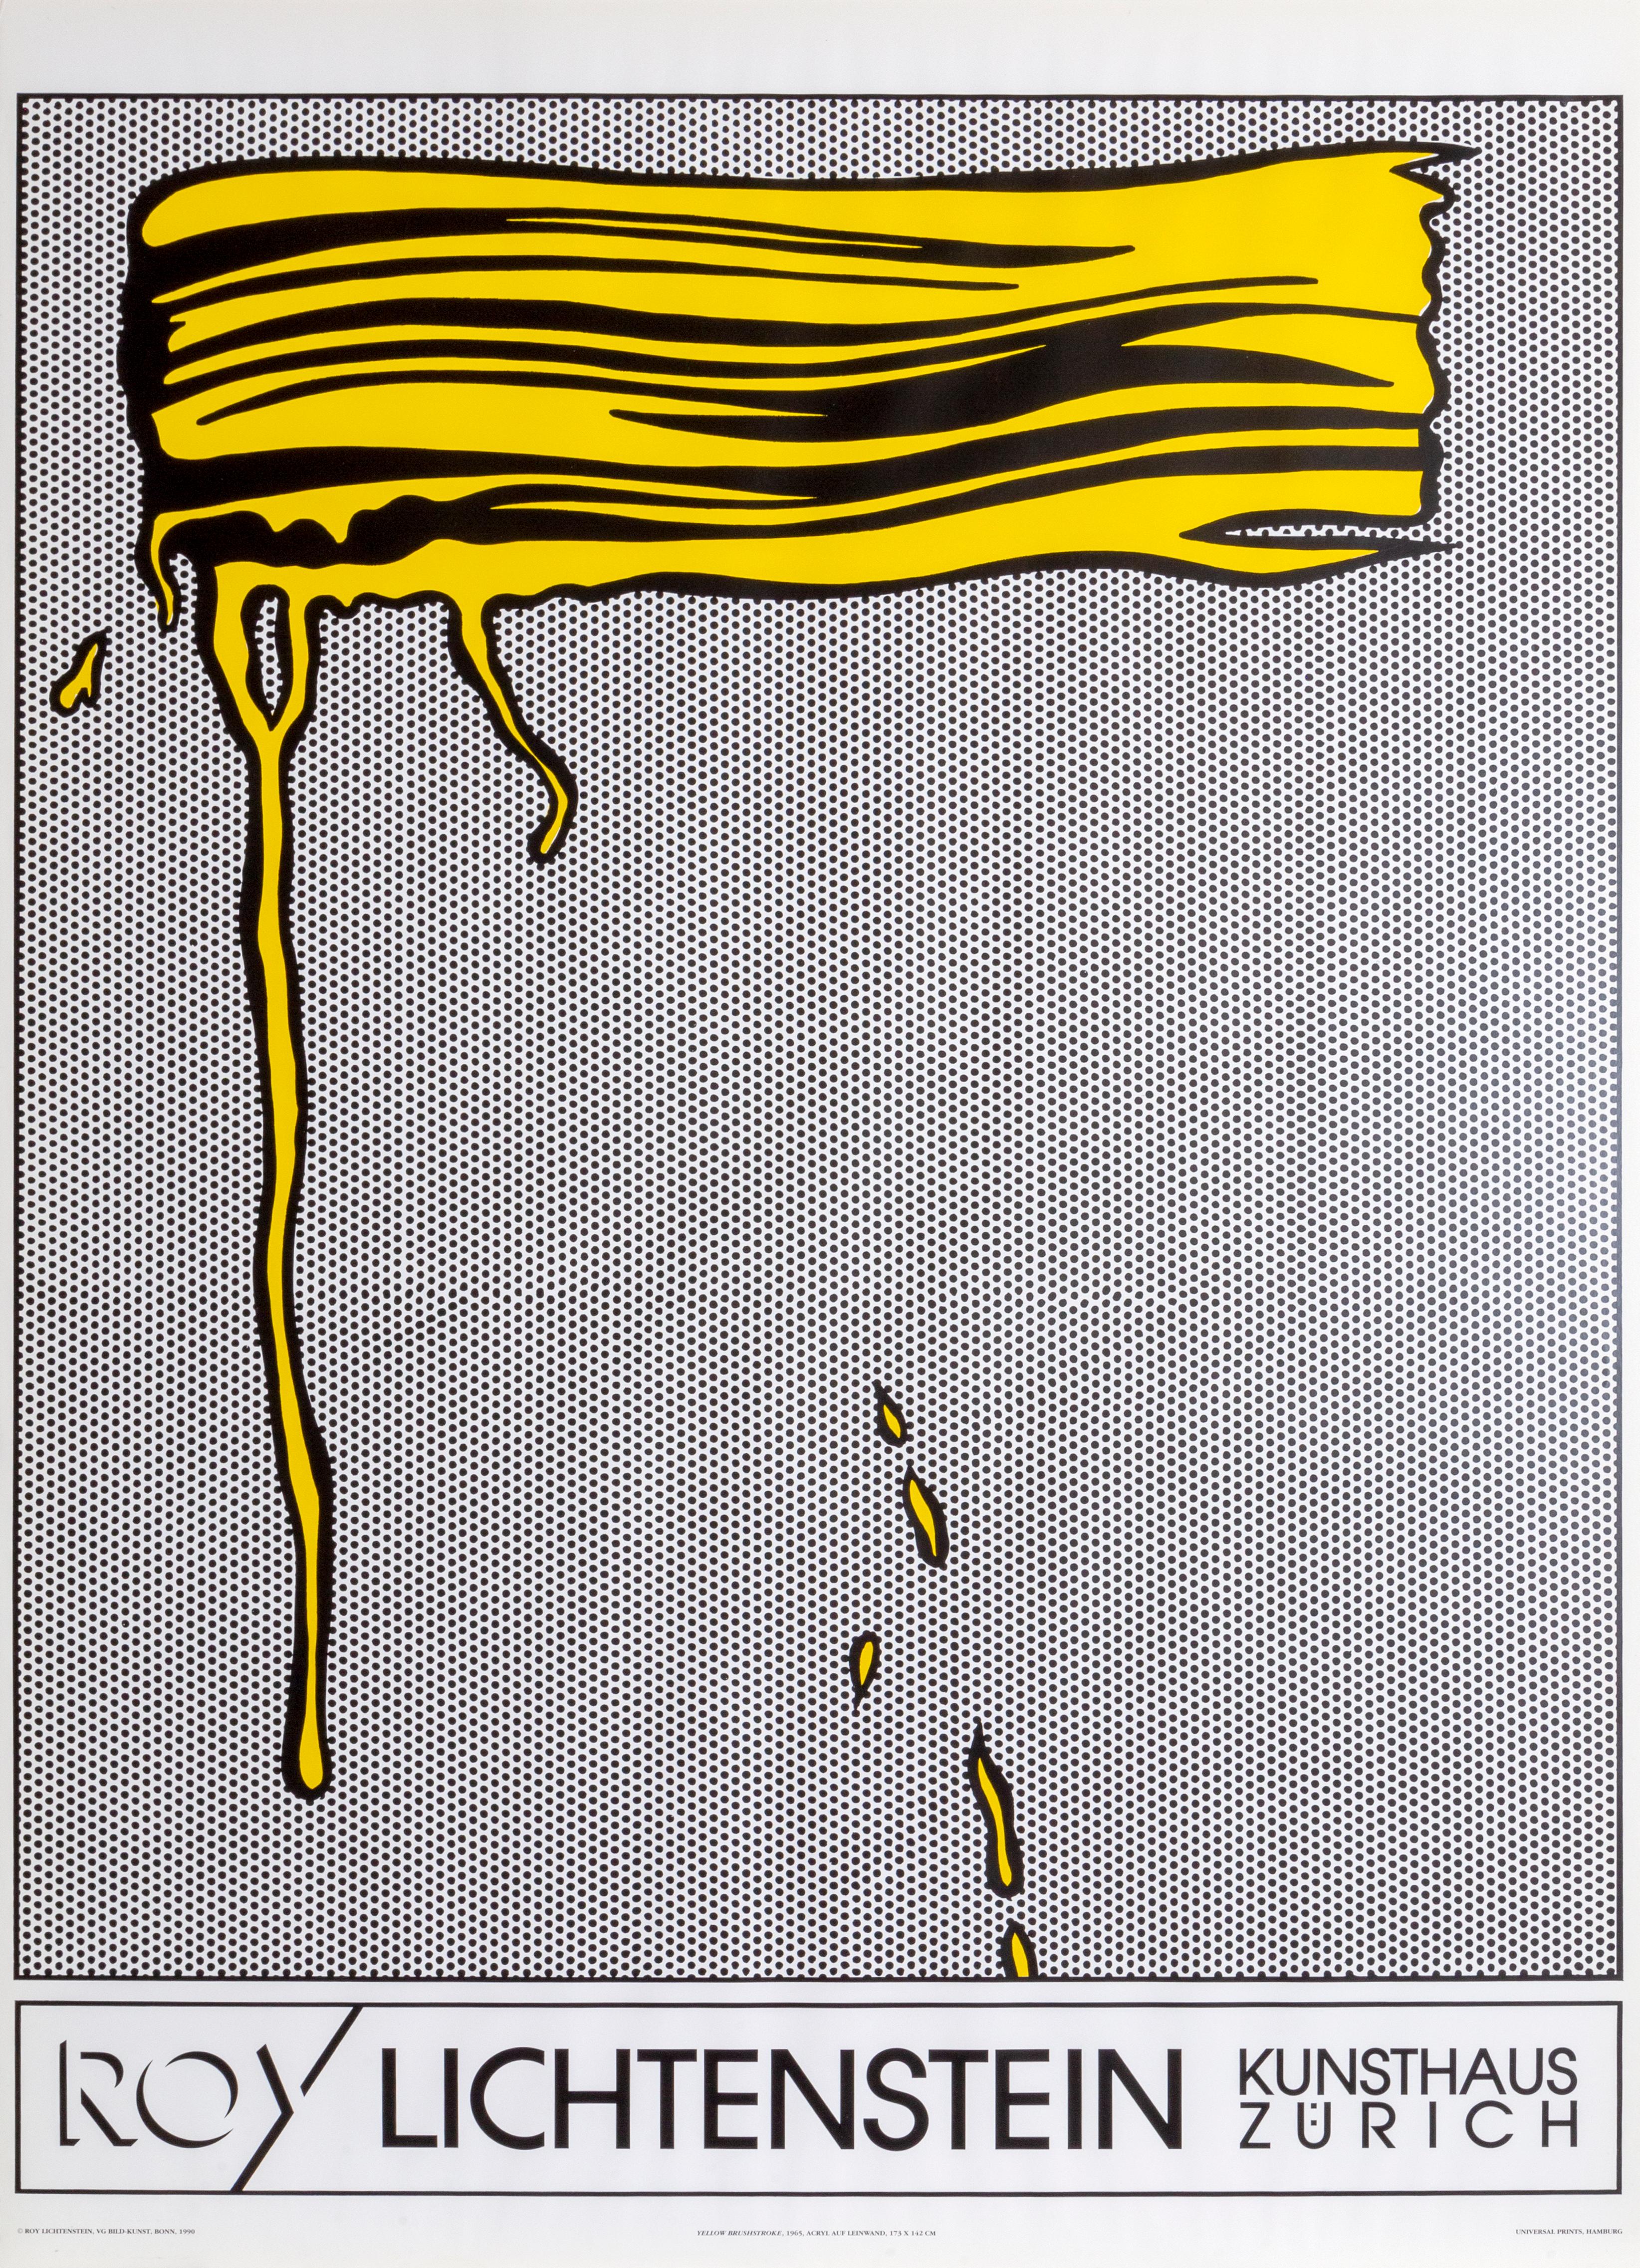 (after) Roy Lichtenstein Figurative Print - Yellow Brushstroke